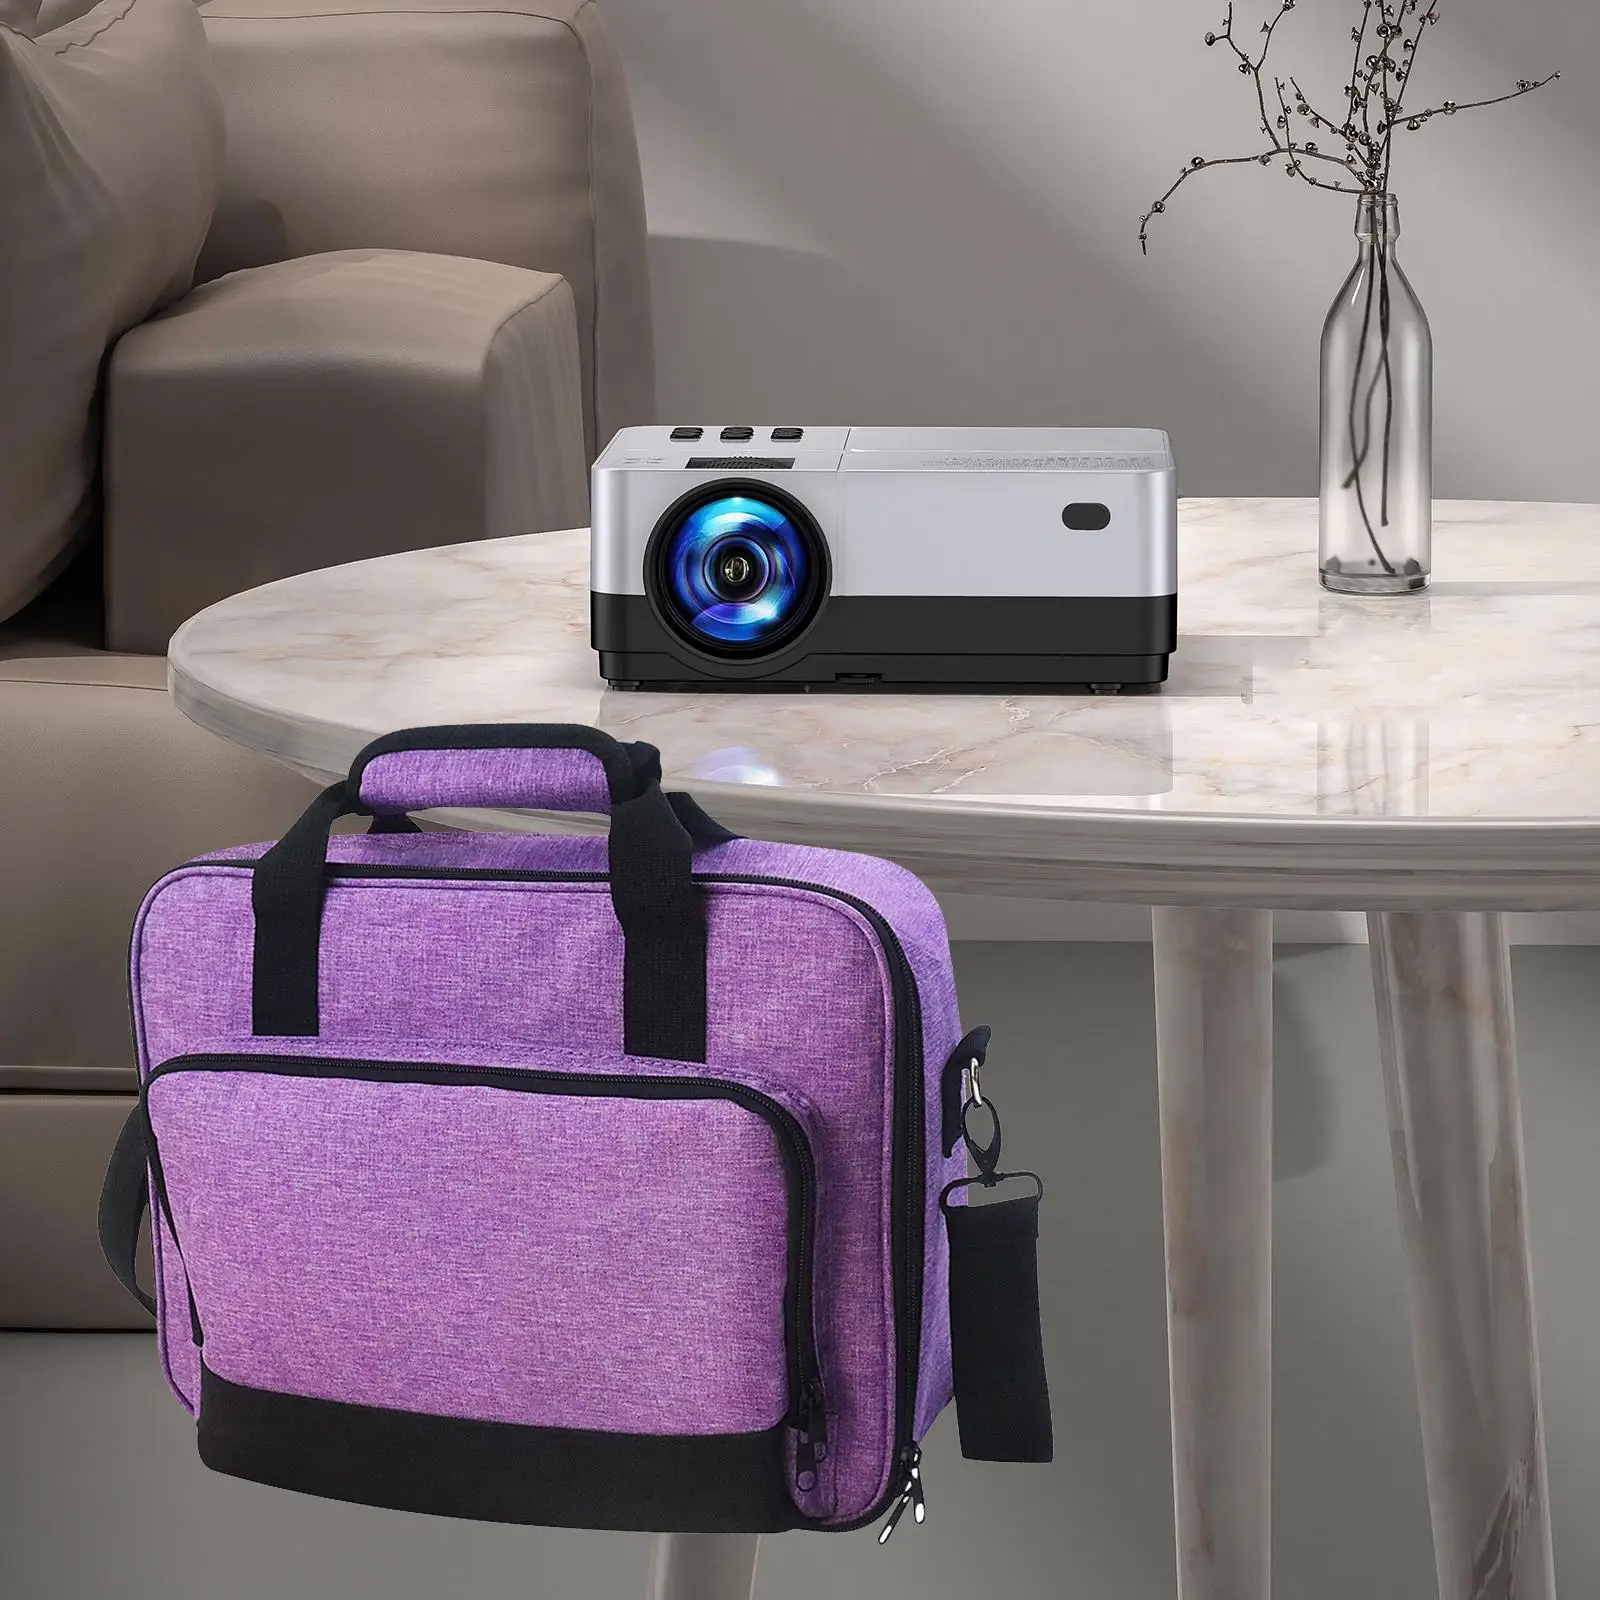 Portable Projector Storage Bag 36x28x10cm Detachable Shoulder Strap Sturdy Handle Purple Stylish Versatile for Travelling